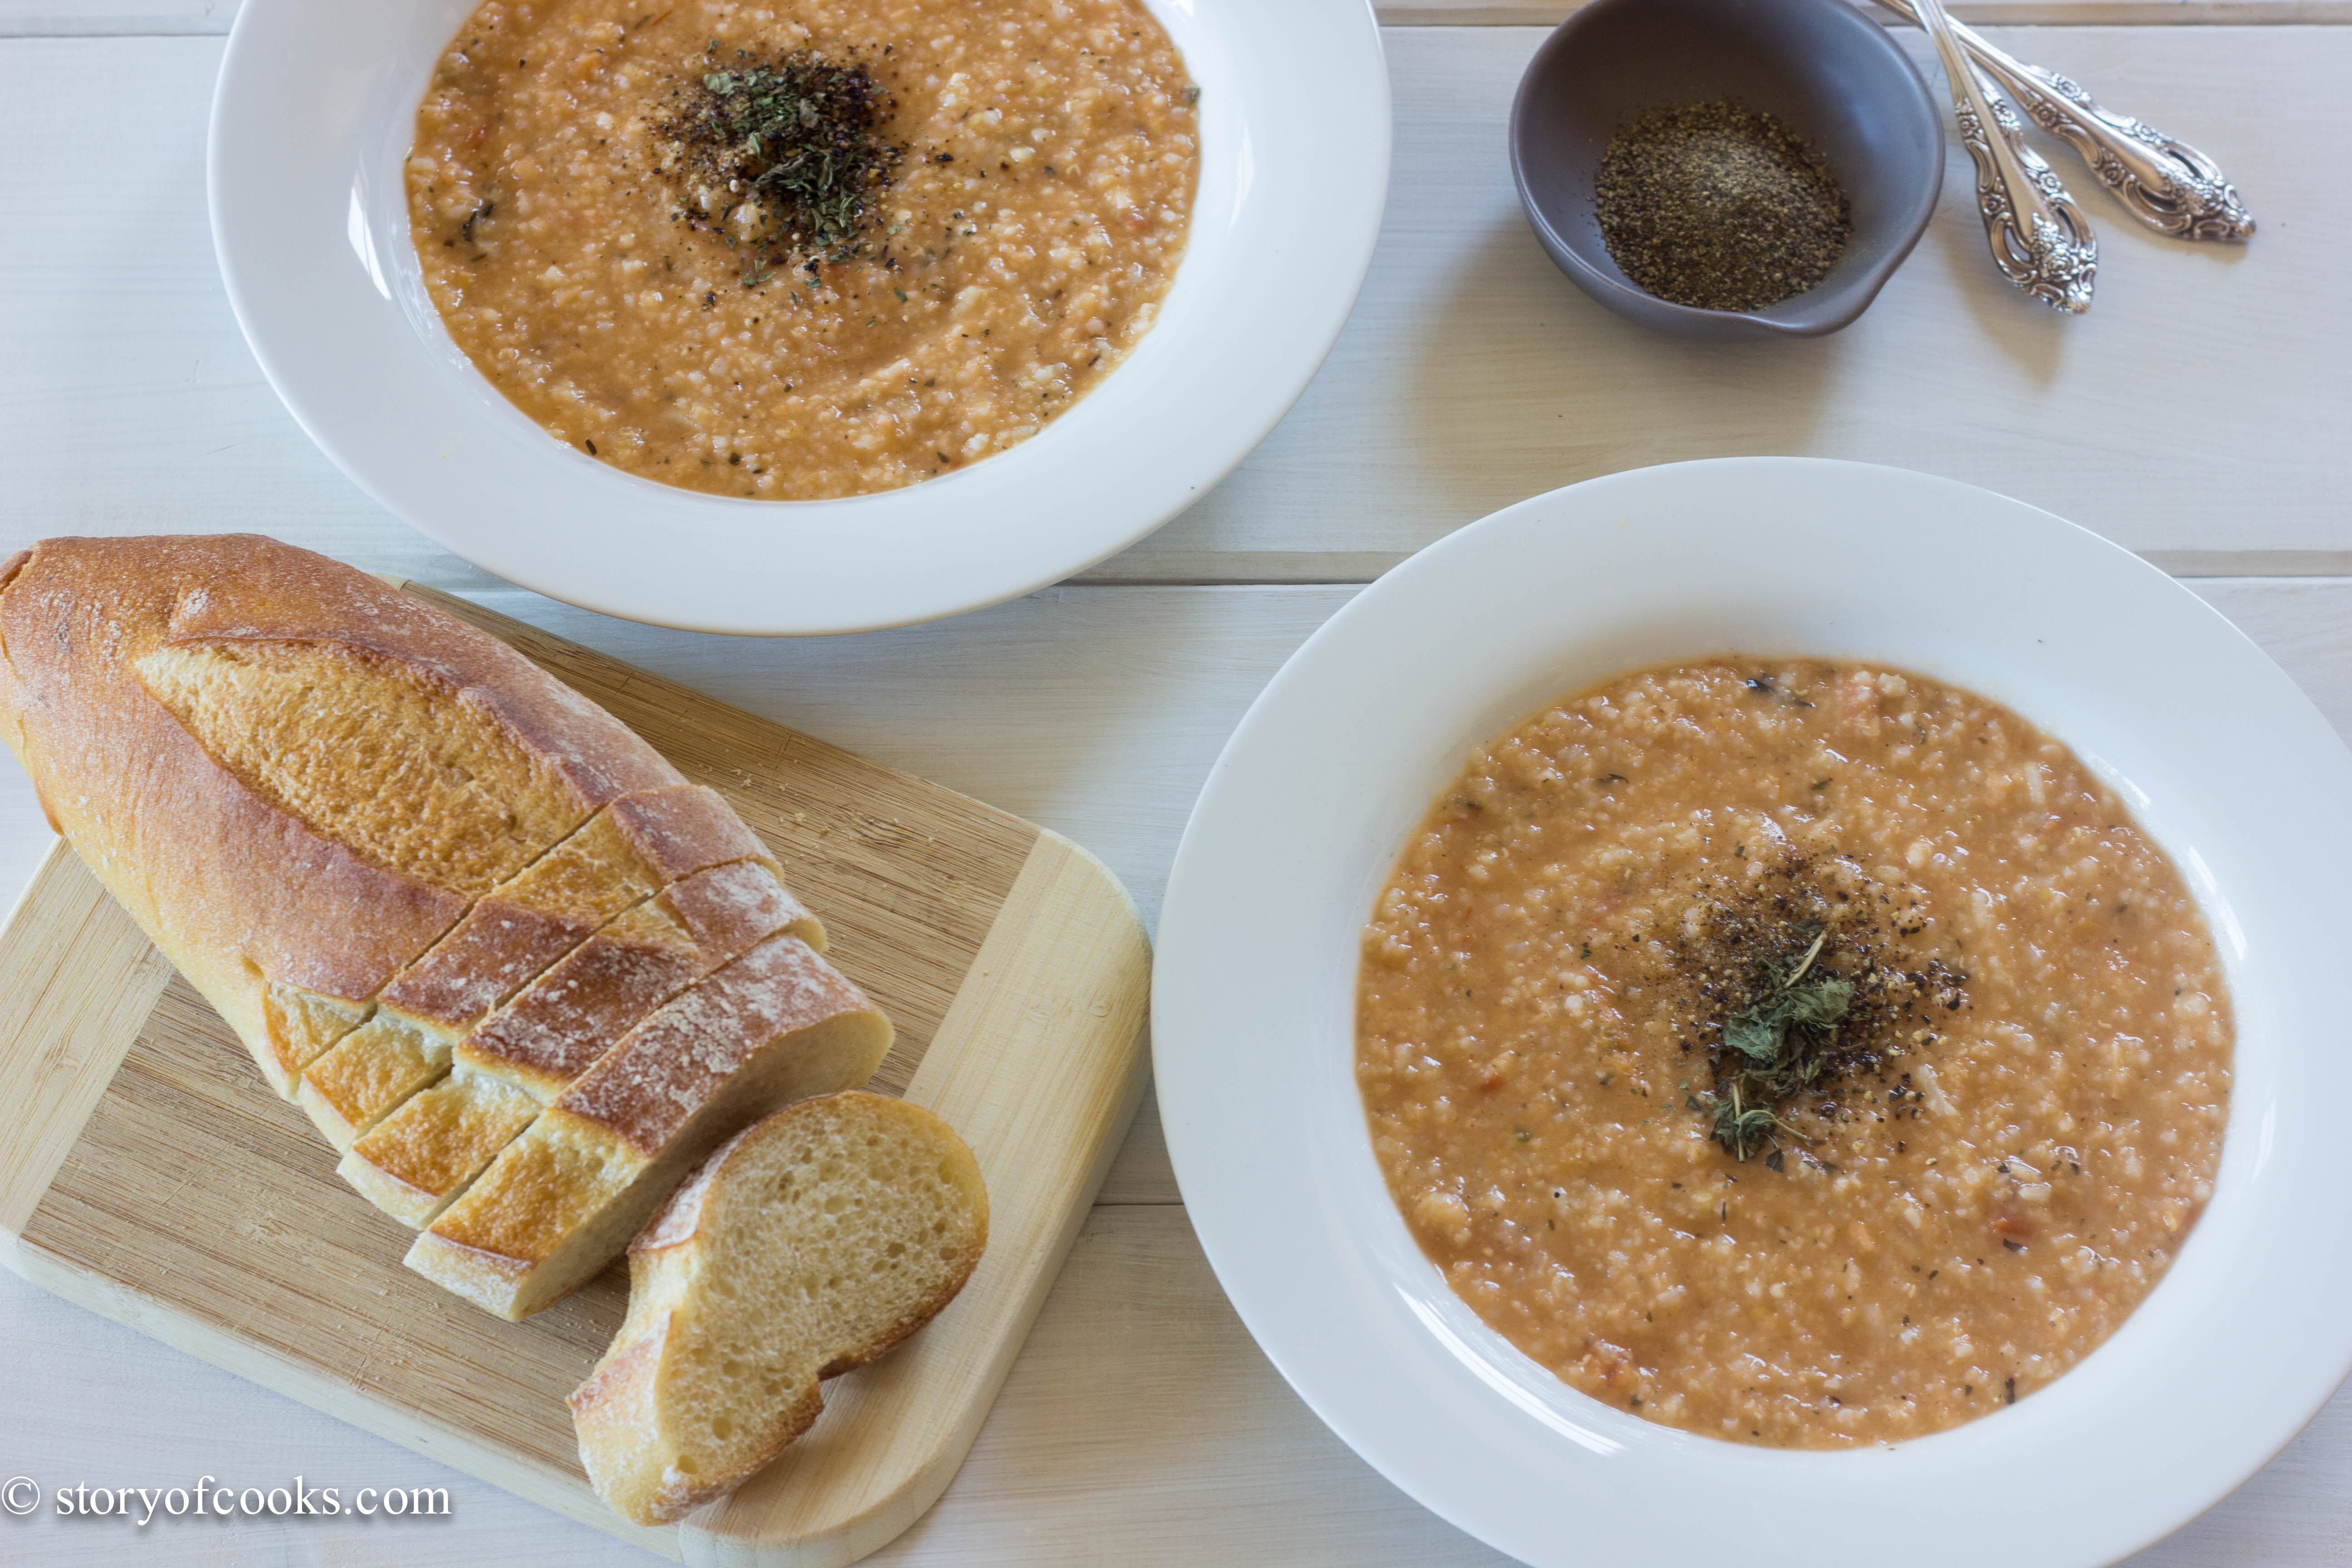 turkish red lentil soup